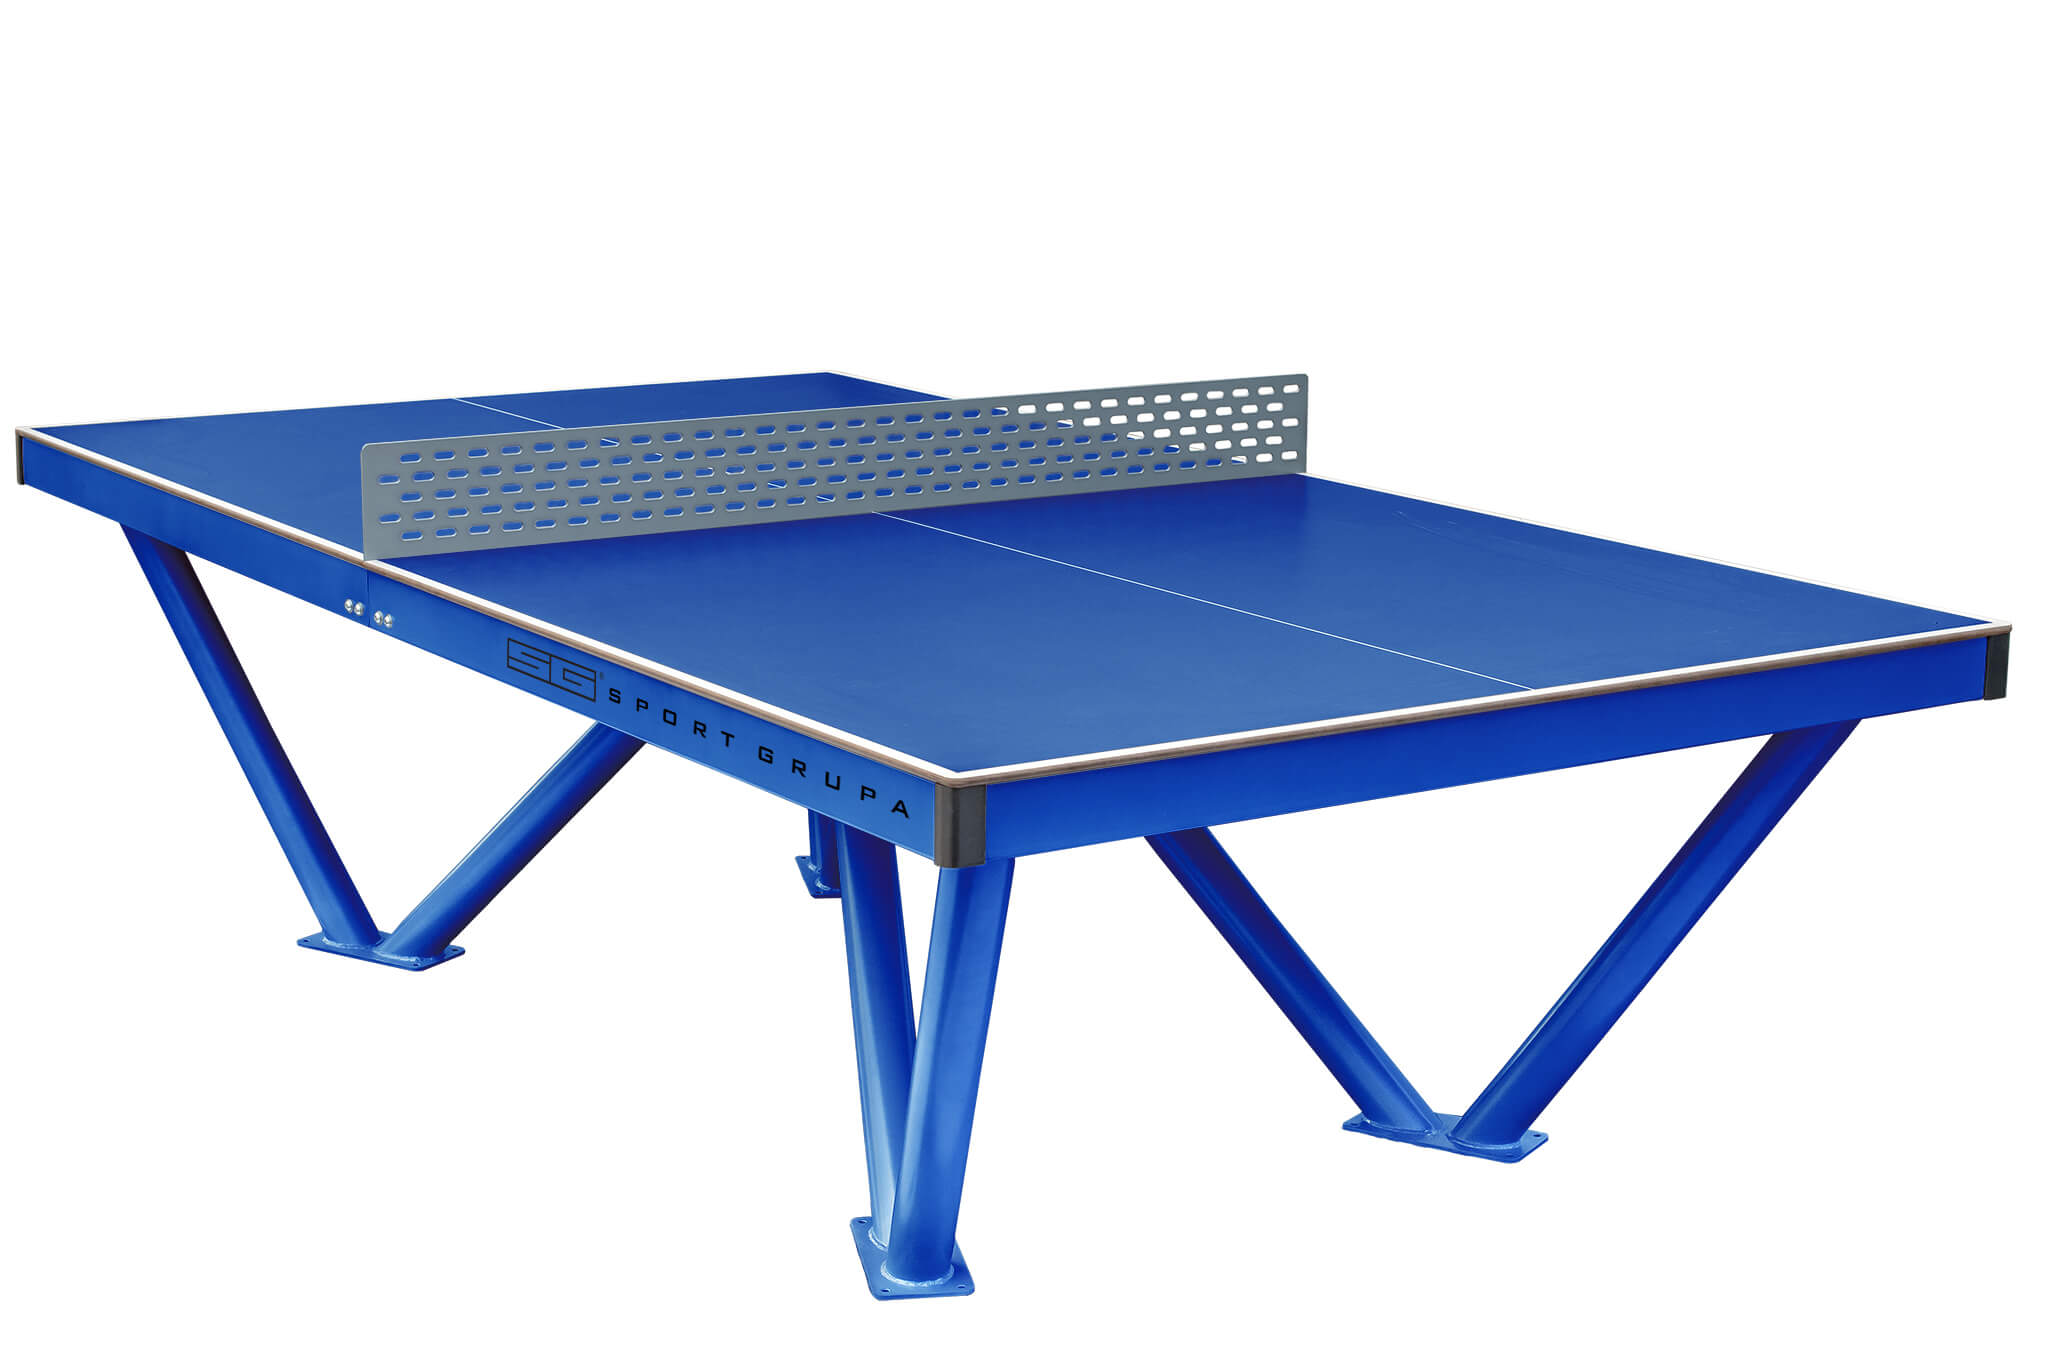 Настольный теннис всепогодный. Теннисный стол City strong Outdoor. Теннисный стол Borneo Drive Blue. Антивандальный теннисный стол СВС-57. Теннисный стол всепогодный proxima_giant Dragon, арт. S6202.